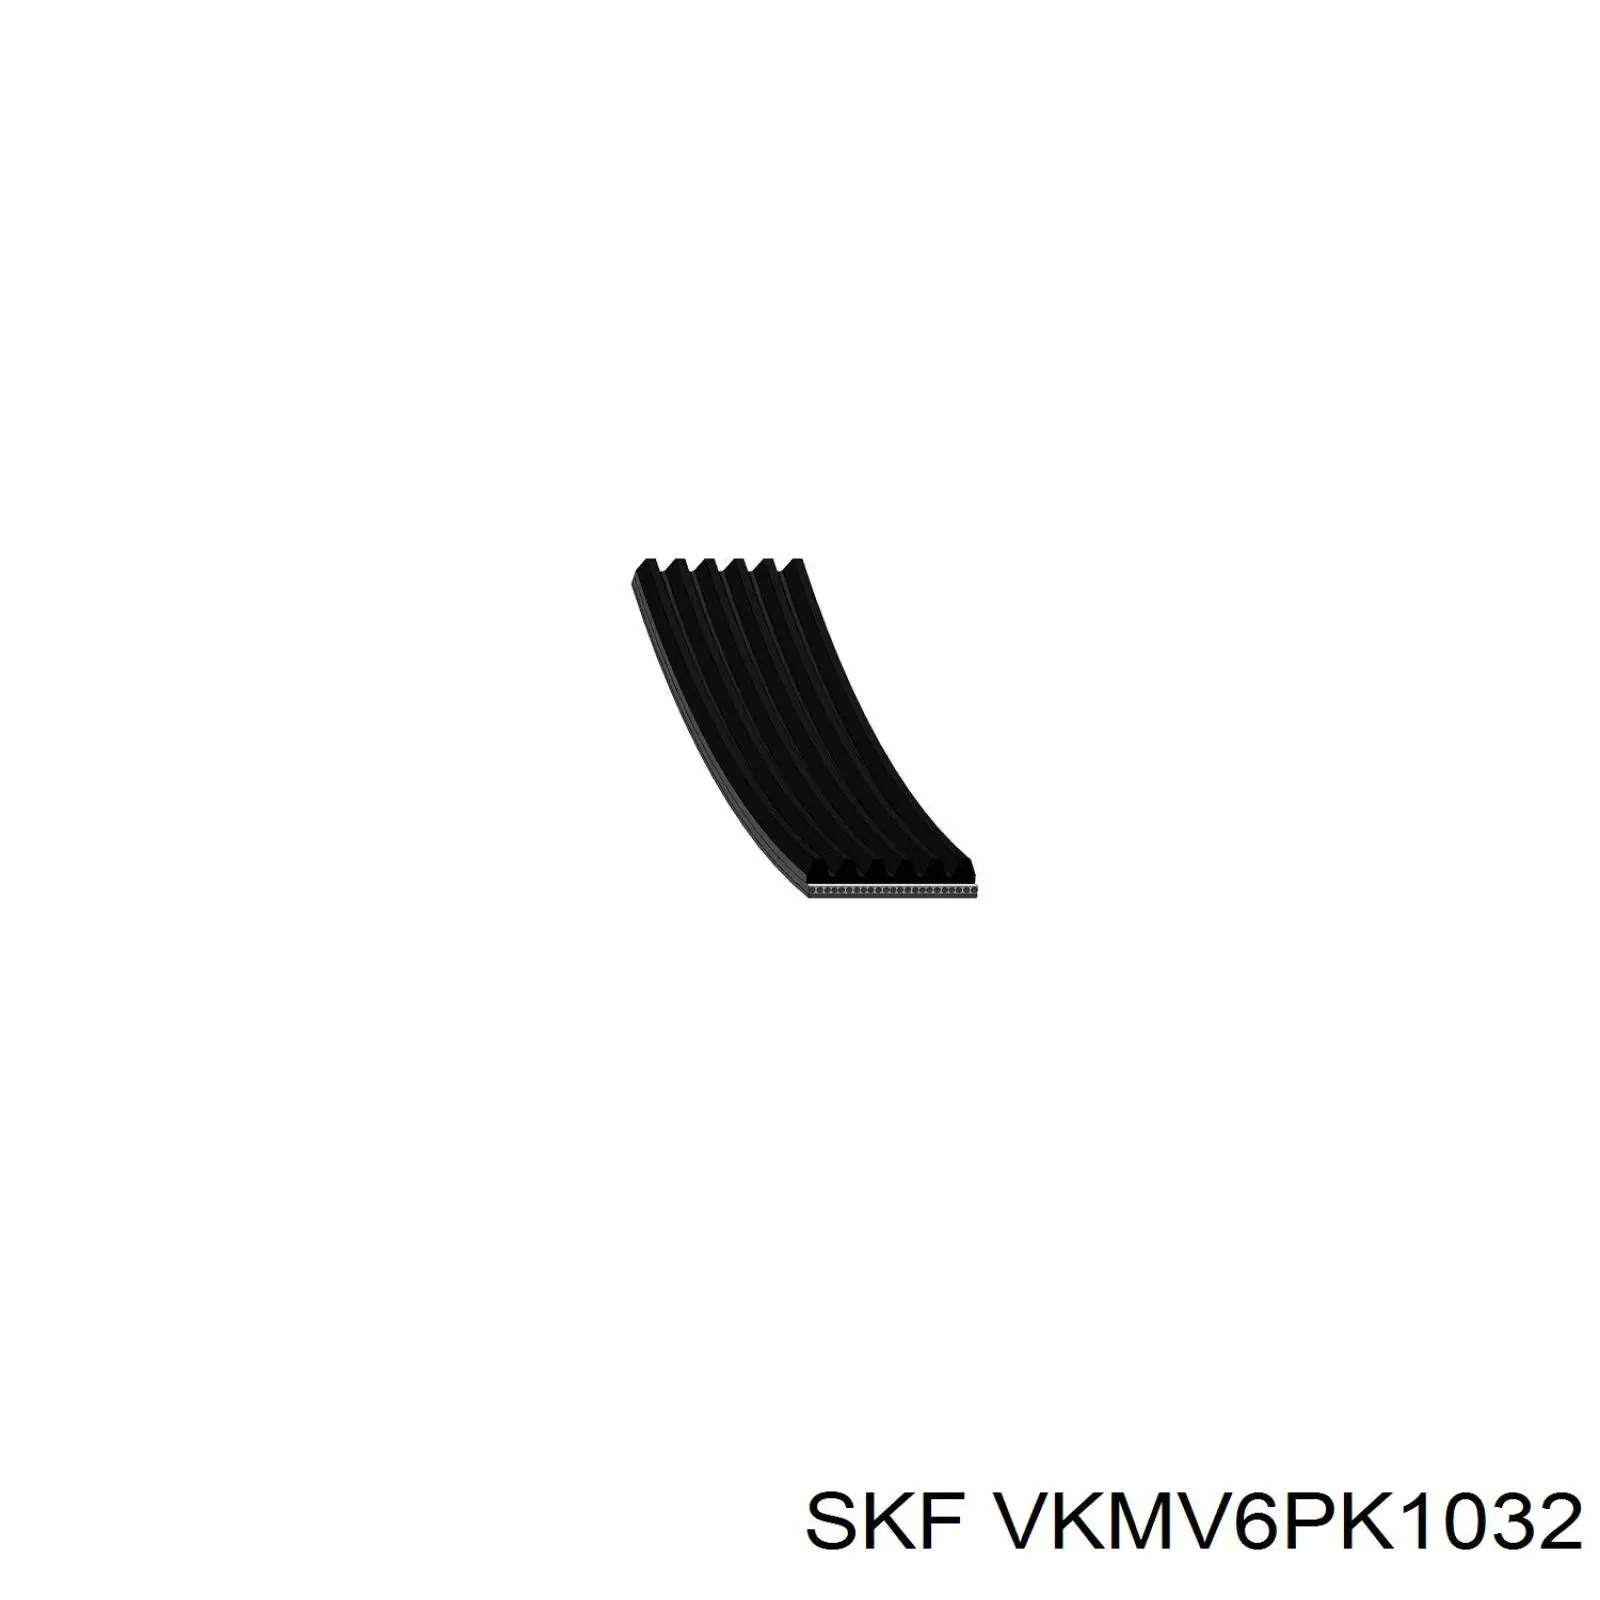 VKMV6PK1032 SKF correa trapezoidal